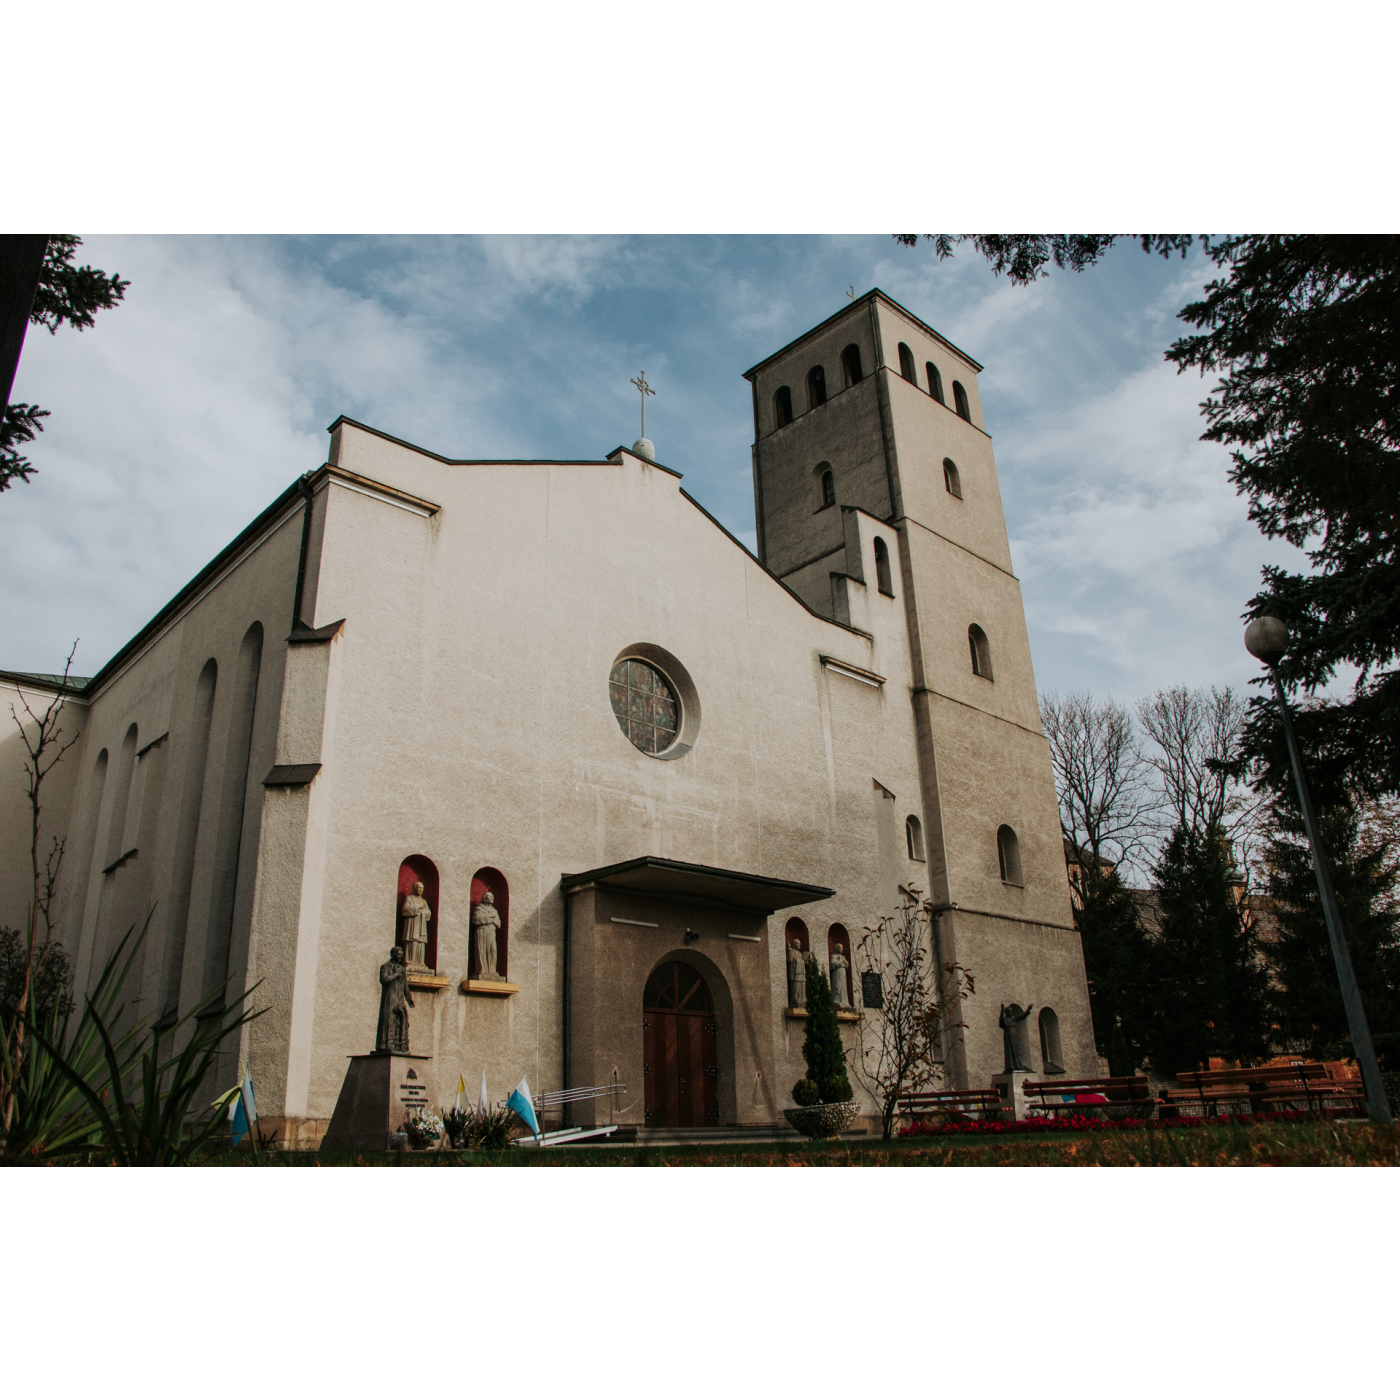 Murowany kościół w kolorze szarym o bardzo szerokiej fasadzie i wysokiej wieży, po obu stronach wejścia znajdują się figury świętych 